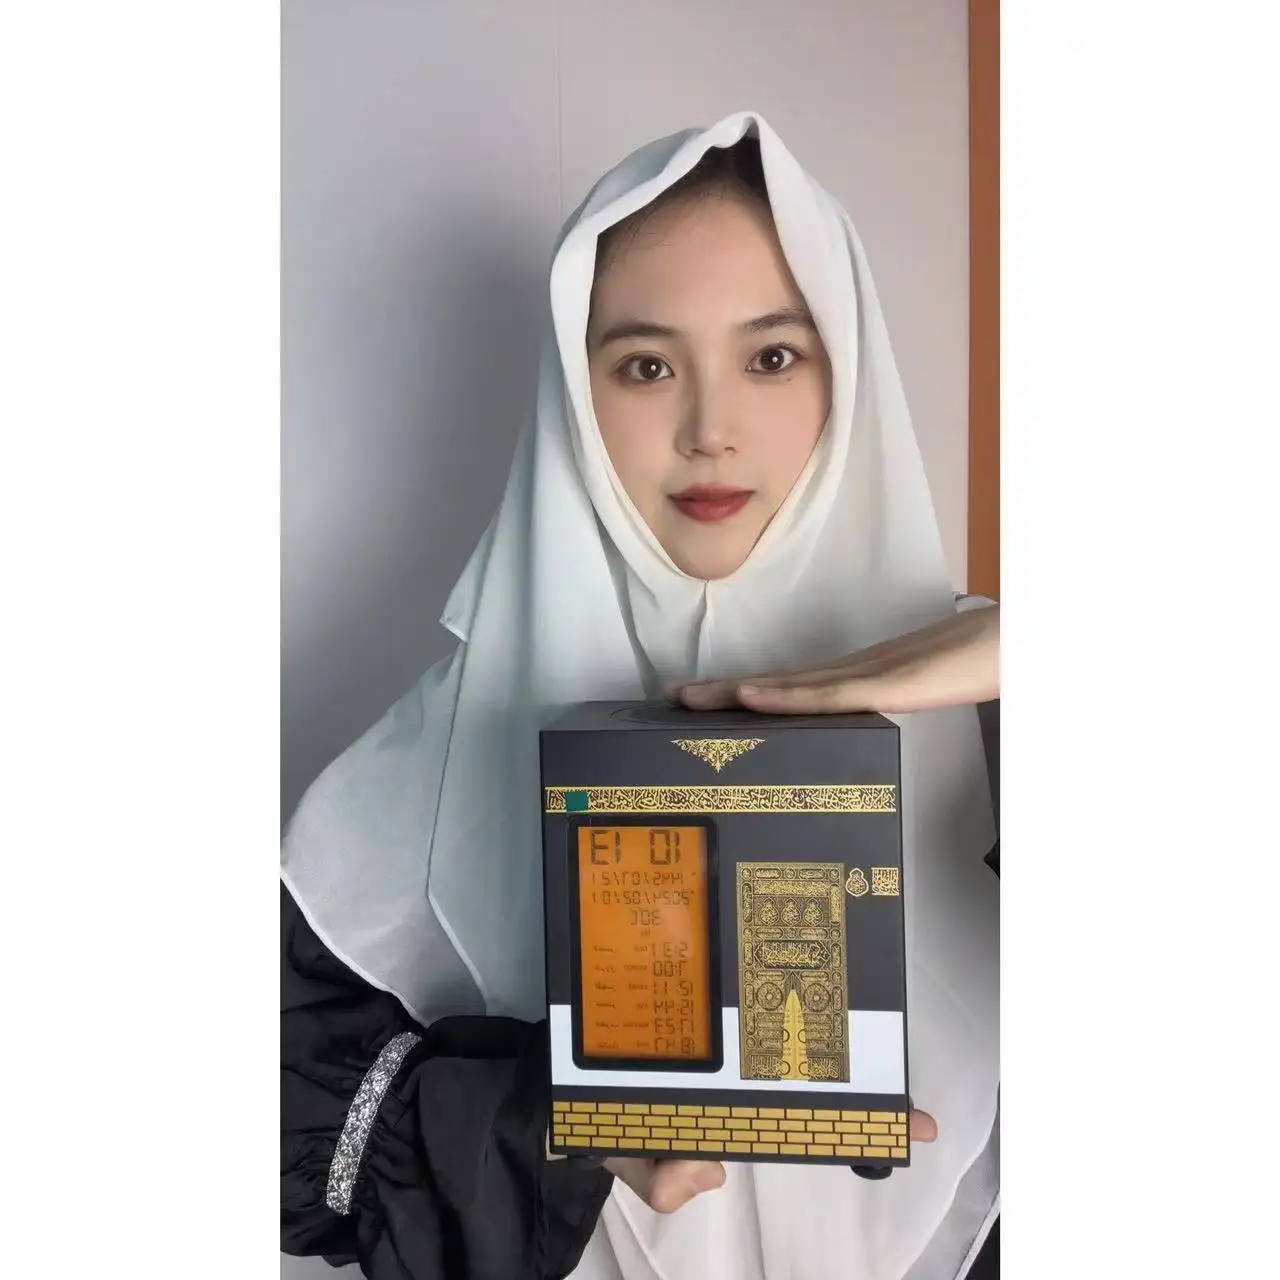 Altoparlante bluetooth corano con APP 3D Kaaba Makkah modello ornamento regalo islamico prodotti islamici ha più recitatori tra cui scegliere.